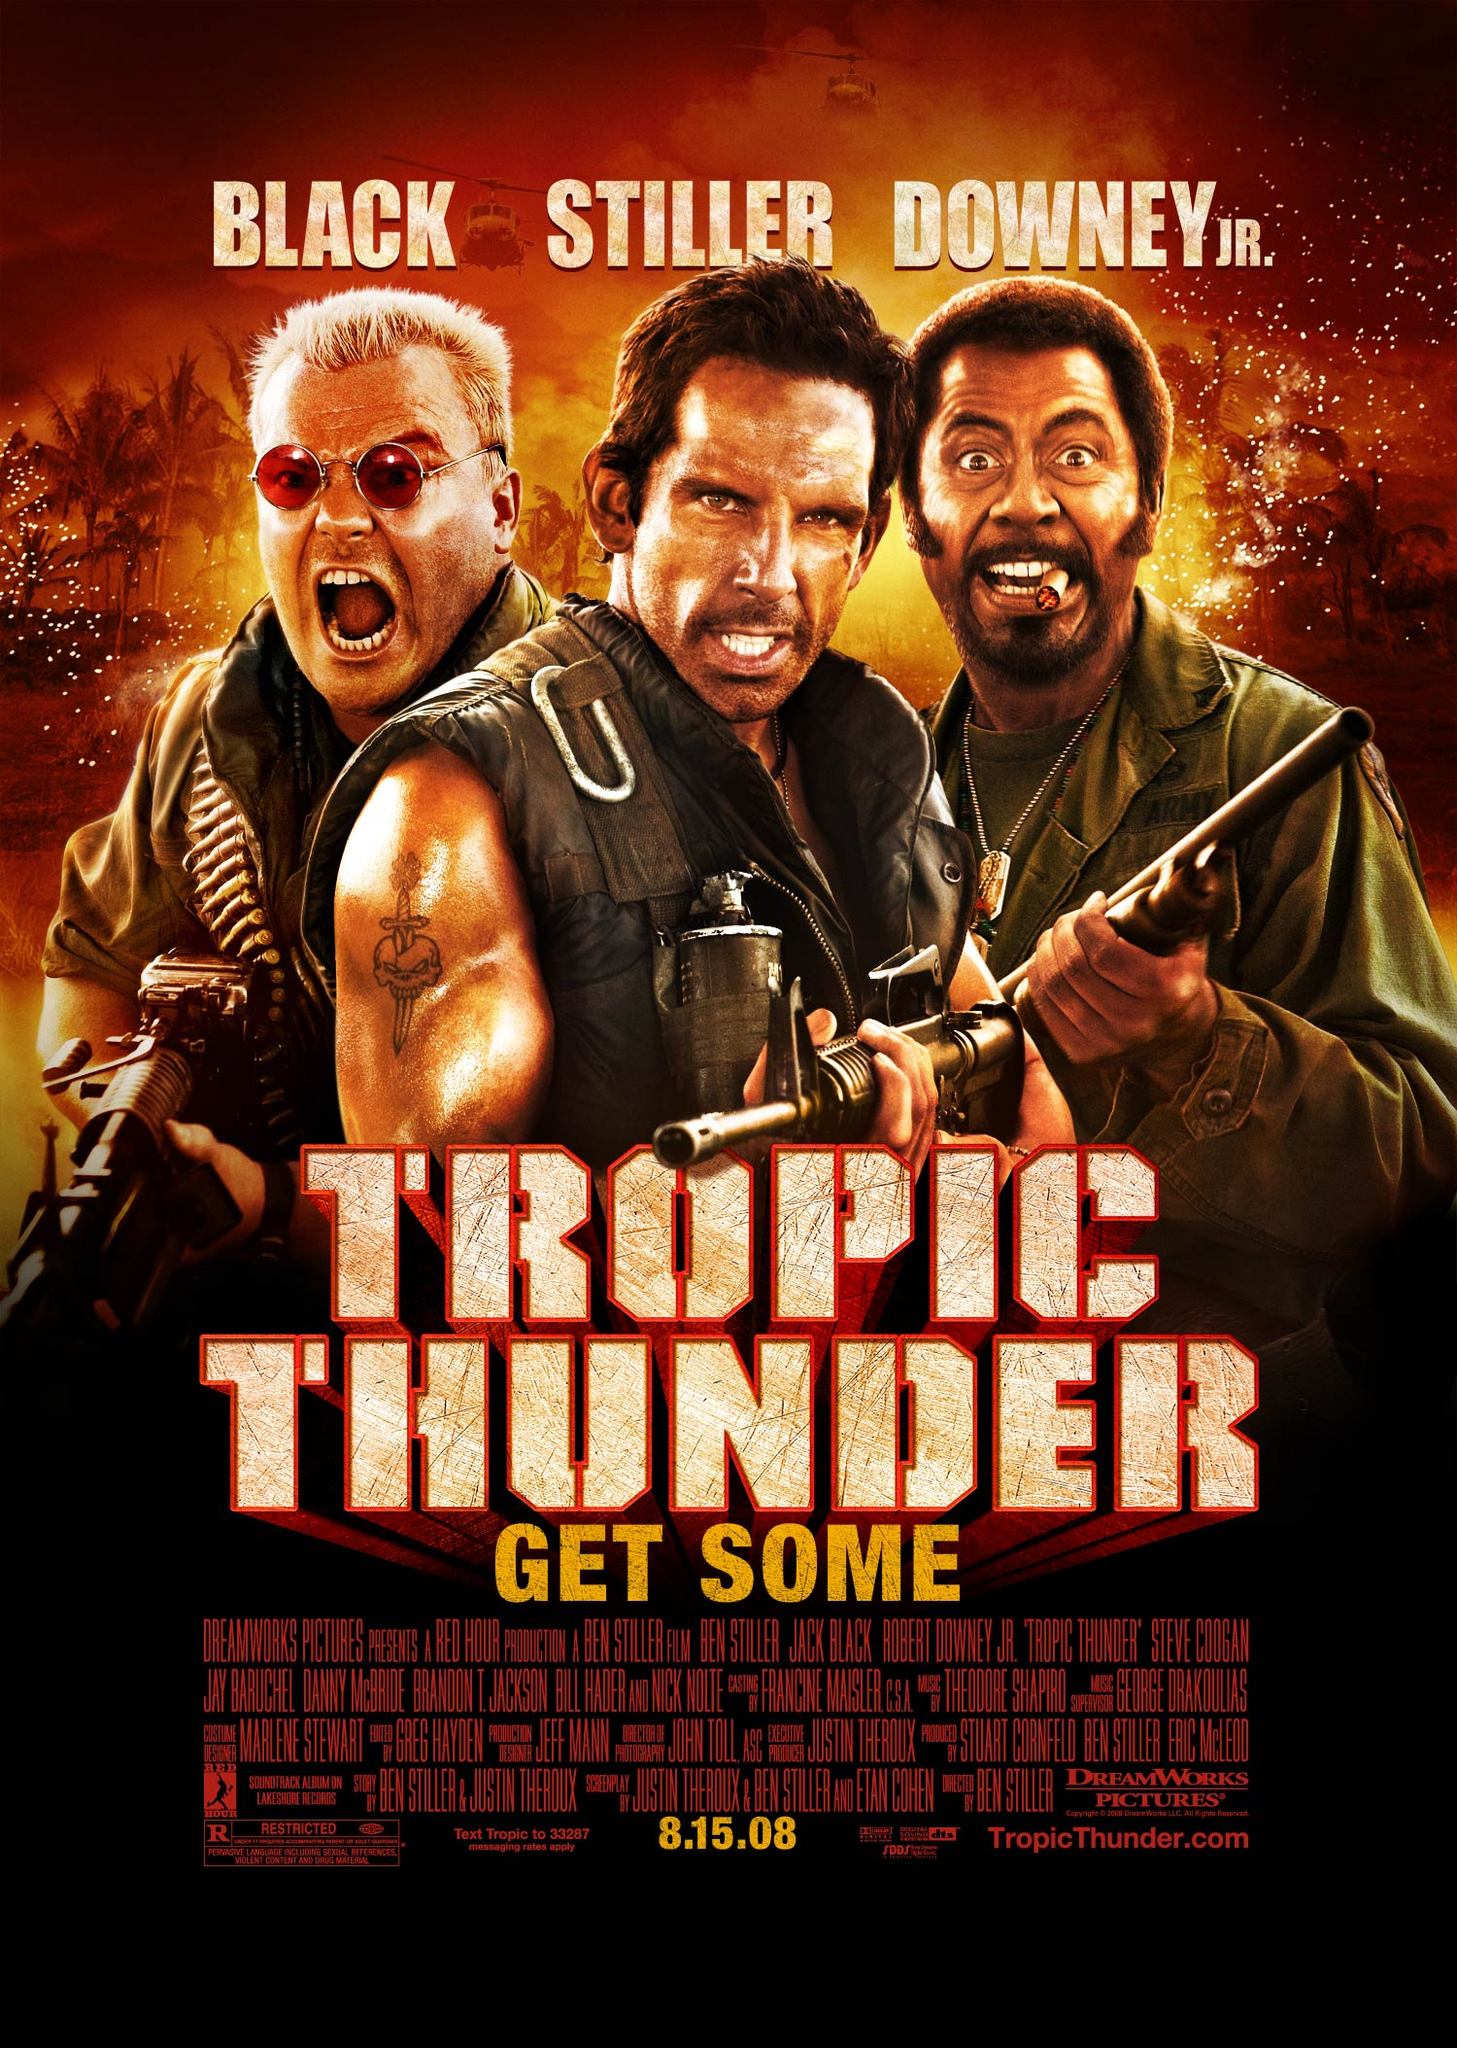 FULL MOVIE: Tropic Thunder (2008)